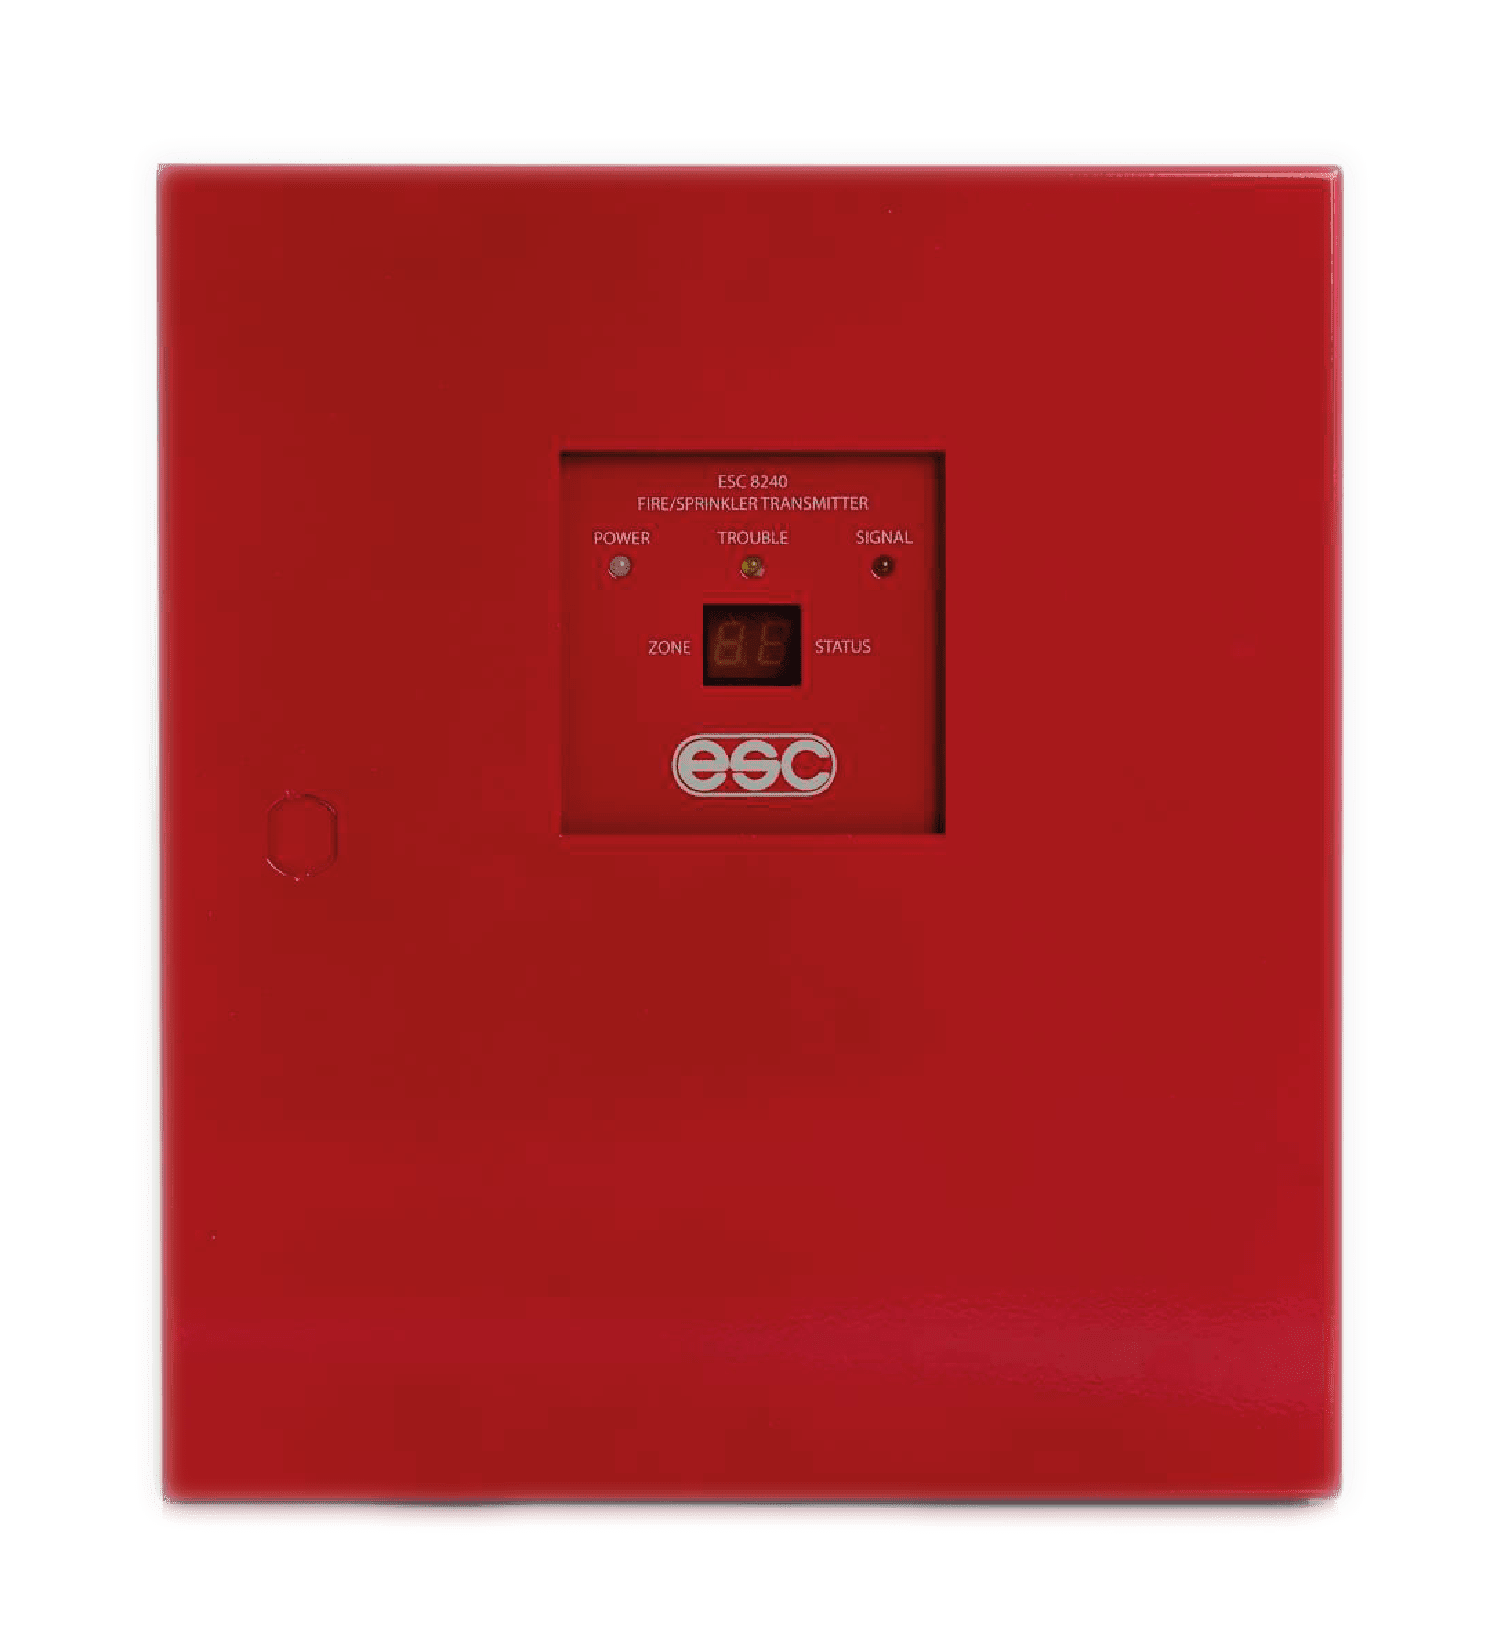 Showing inside from ESC 8240 Fire Sprinkler Transmitter kit